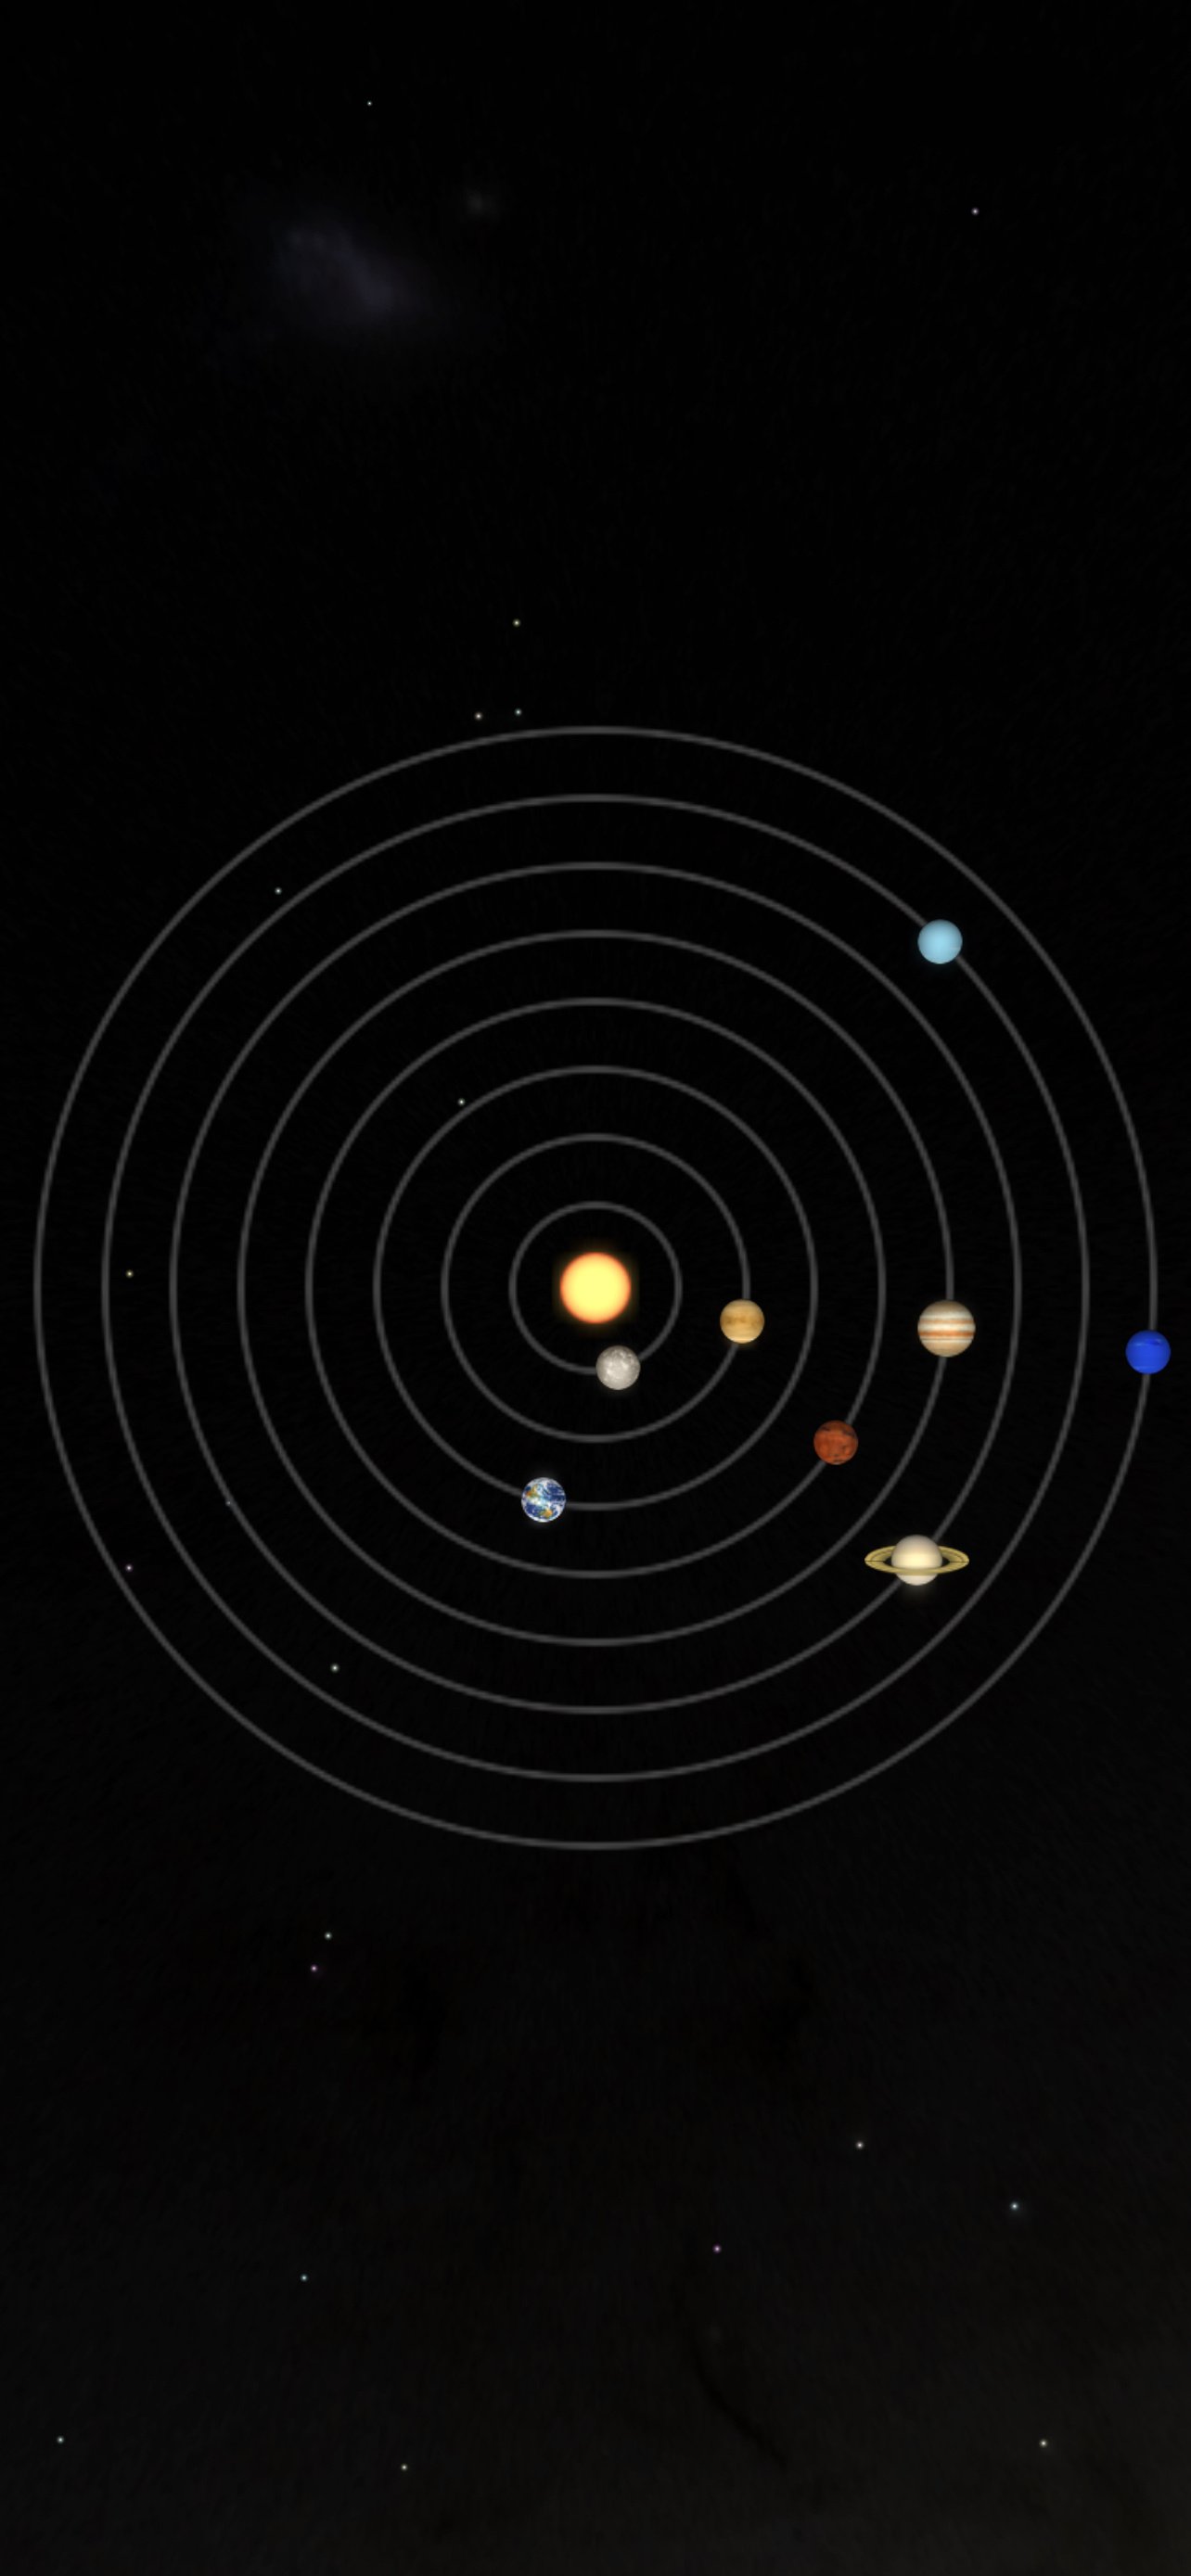 moving solar system wallpaper